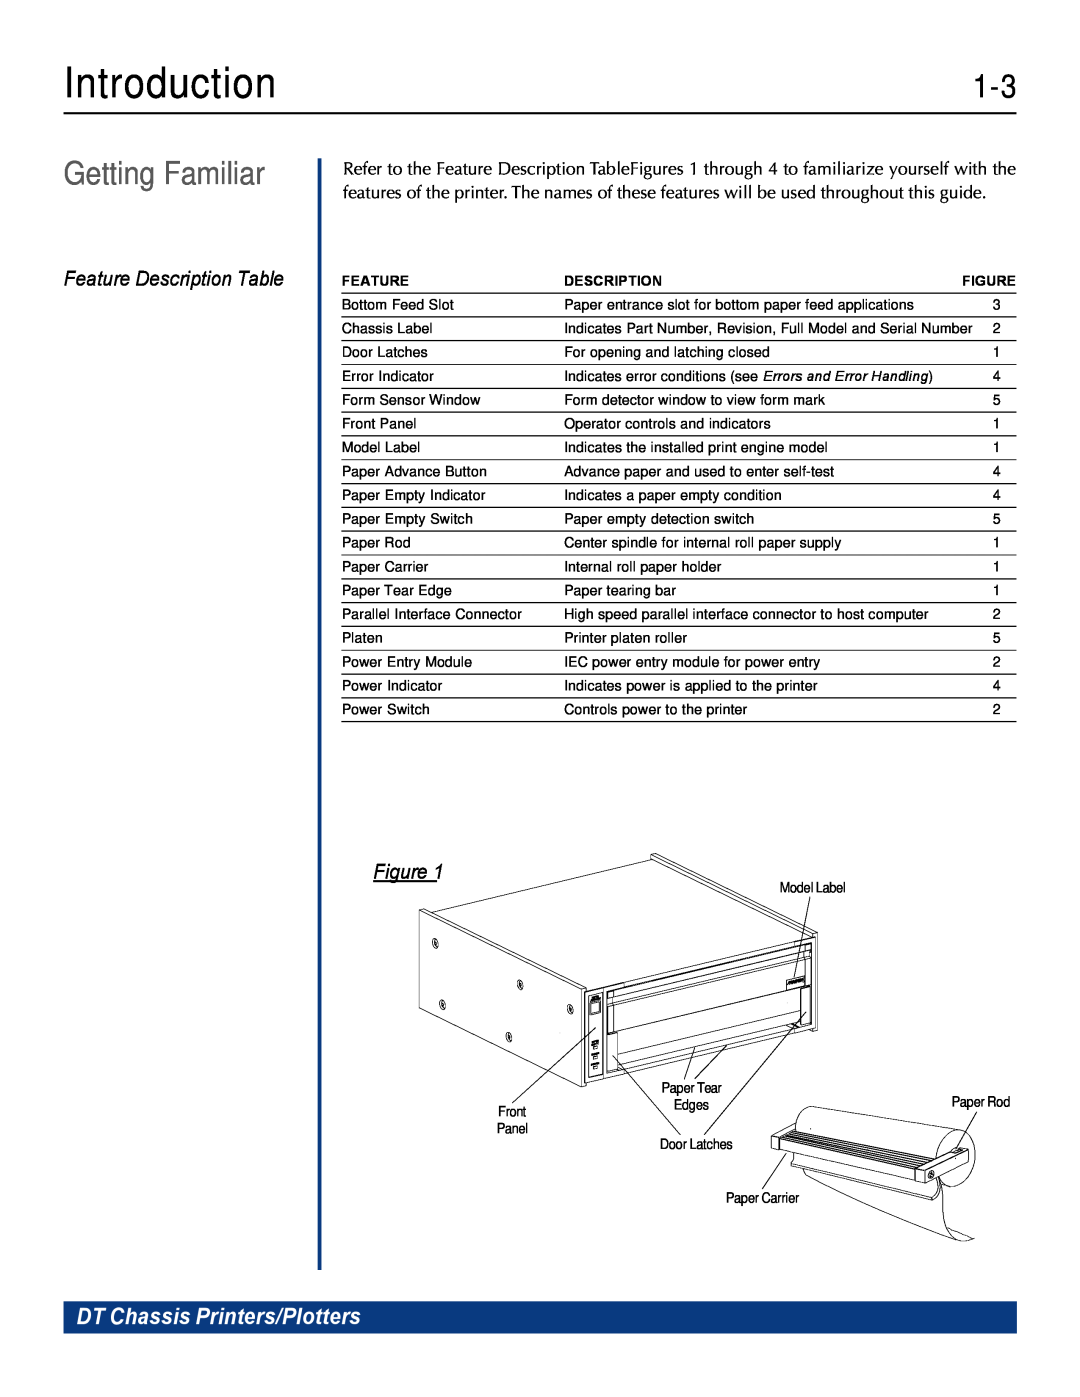 Printek 820G, 810, 840DL/G, 820DL/G Getting Familiar, Feature Description Table, Introduction, DT Chassis Printers/Plotters 